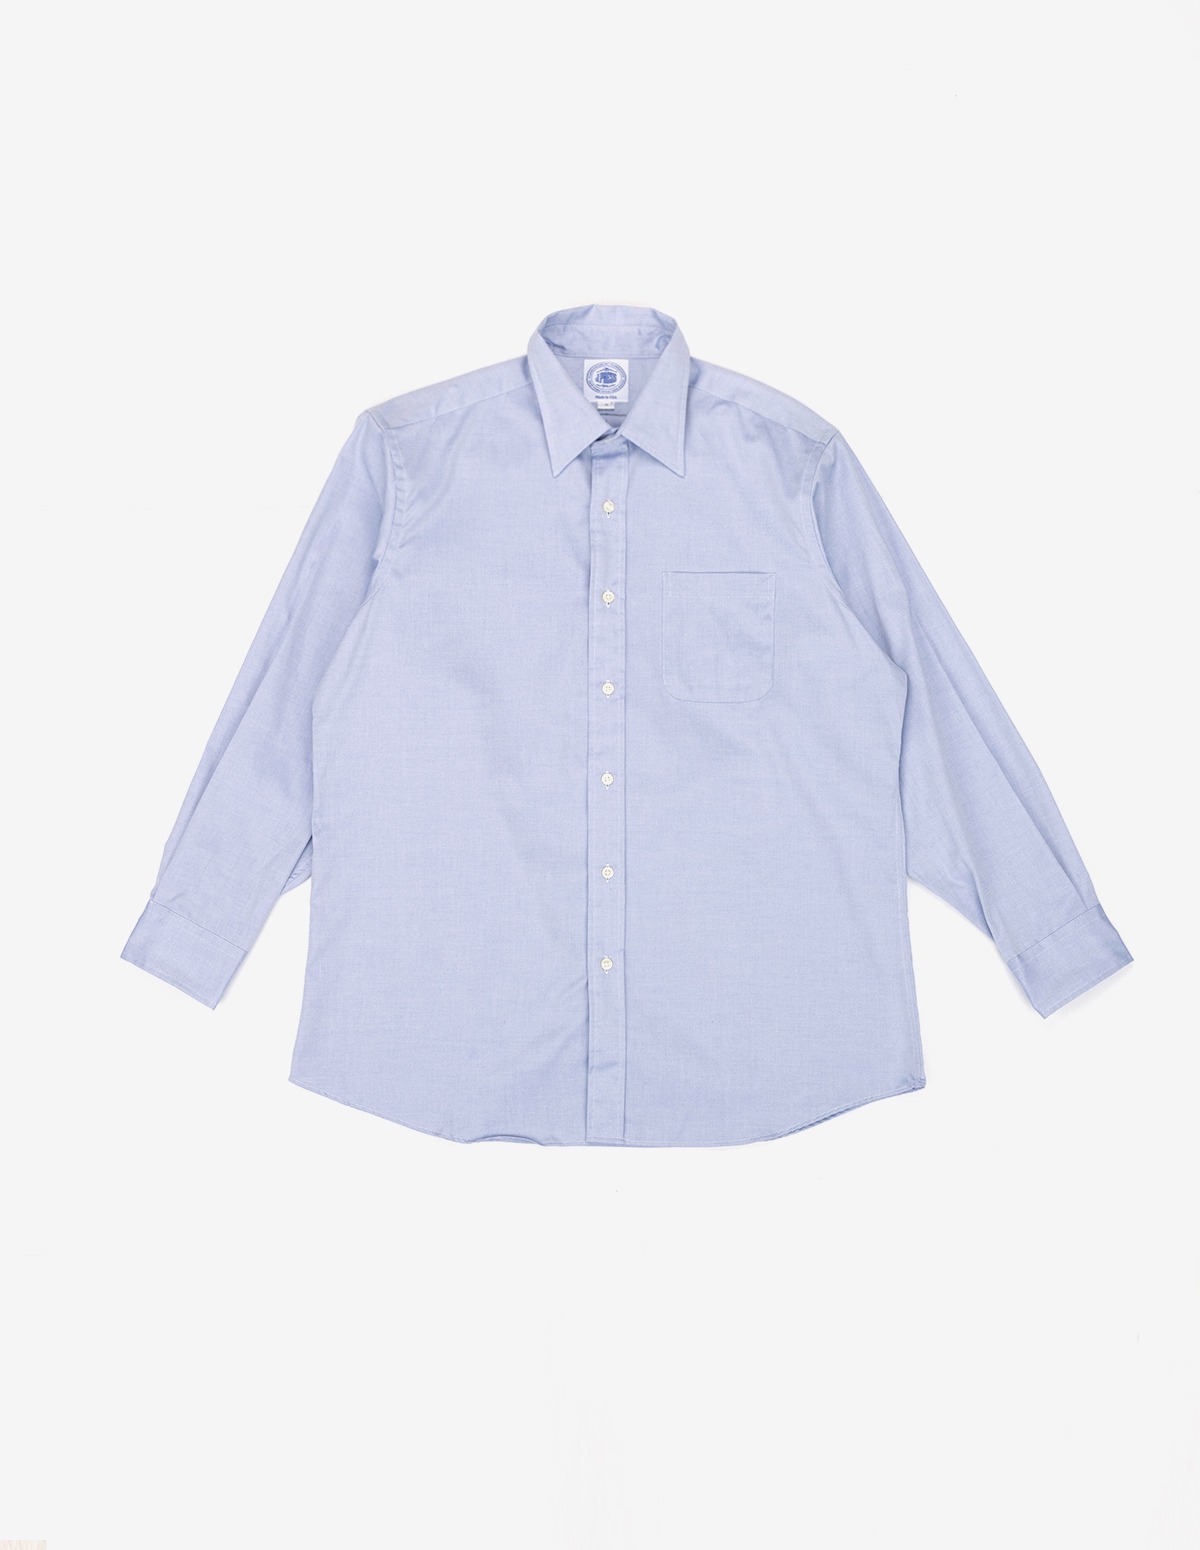 Pinpoint Collar Dress Shirt (Blue)